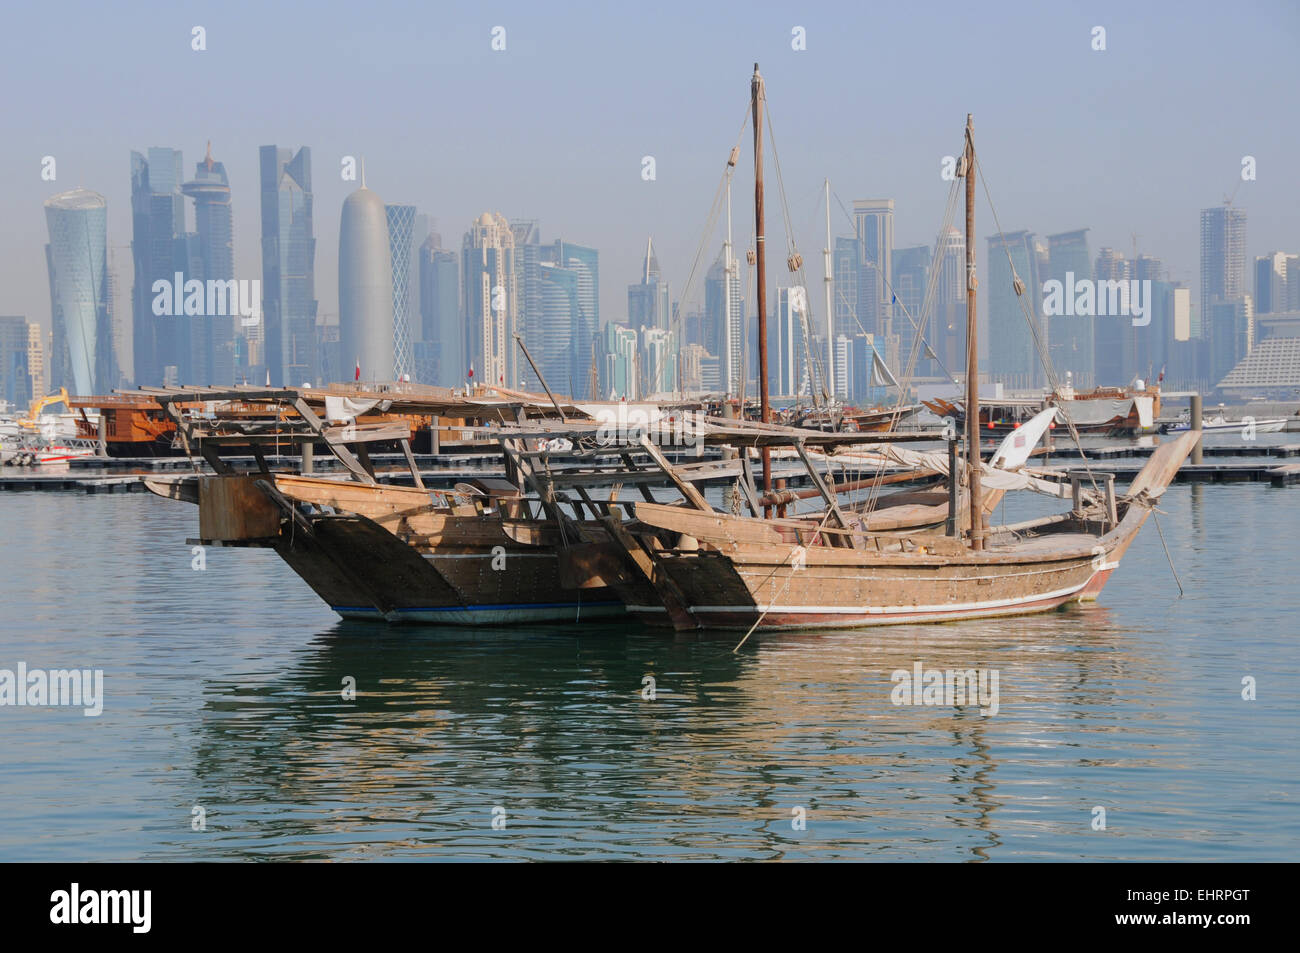 La Corniche et le port de boutres, Doha, Qatar. Moyen Orient. Banque D'Images